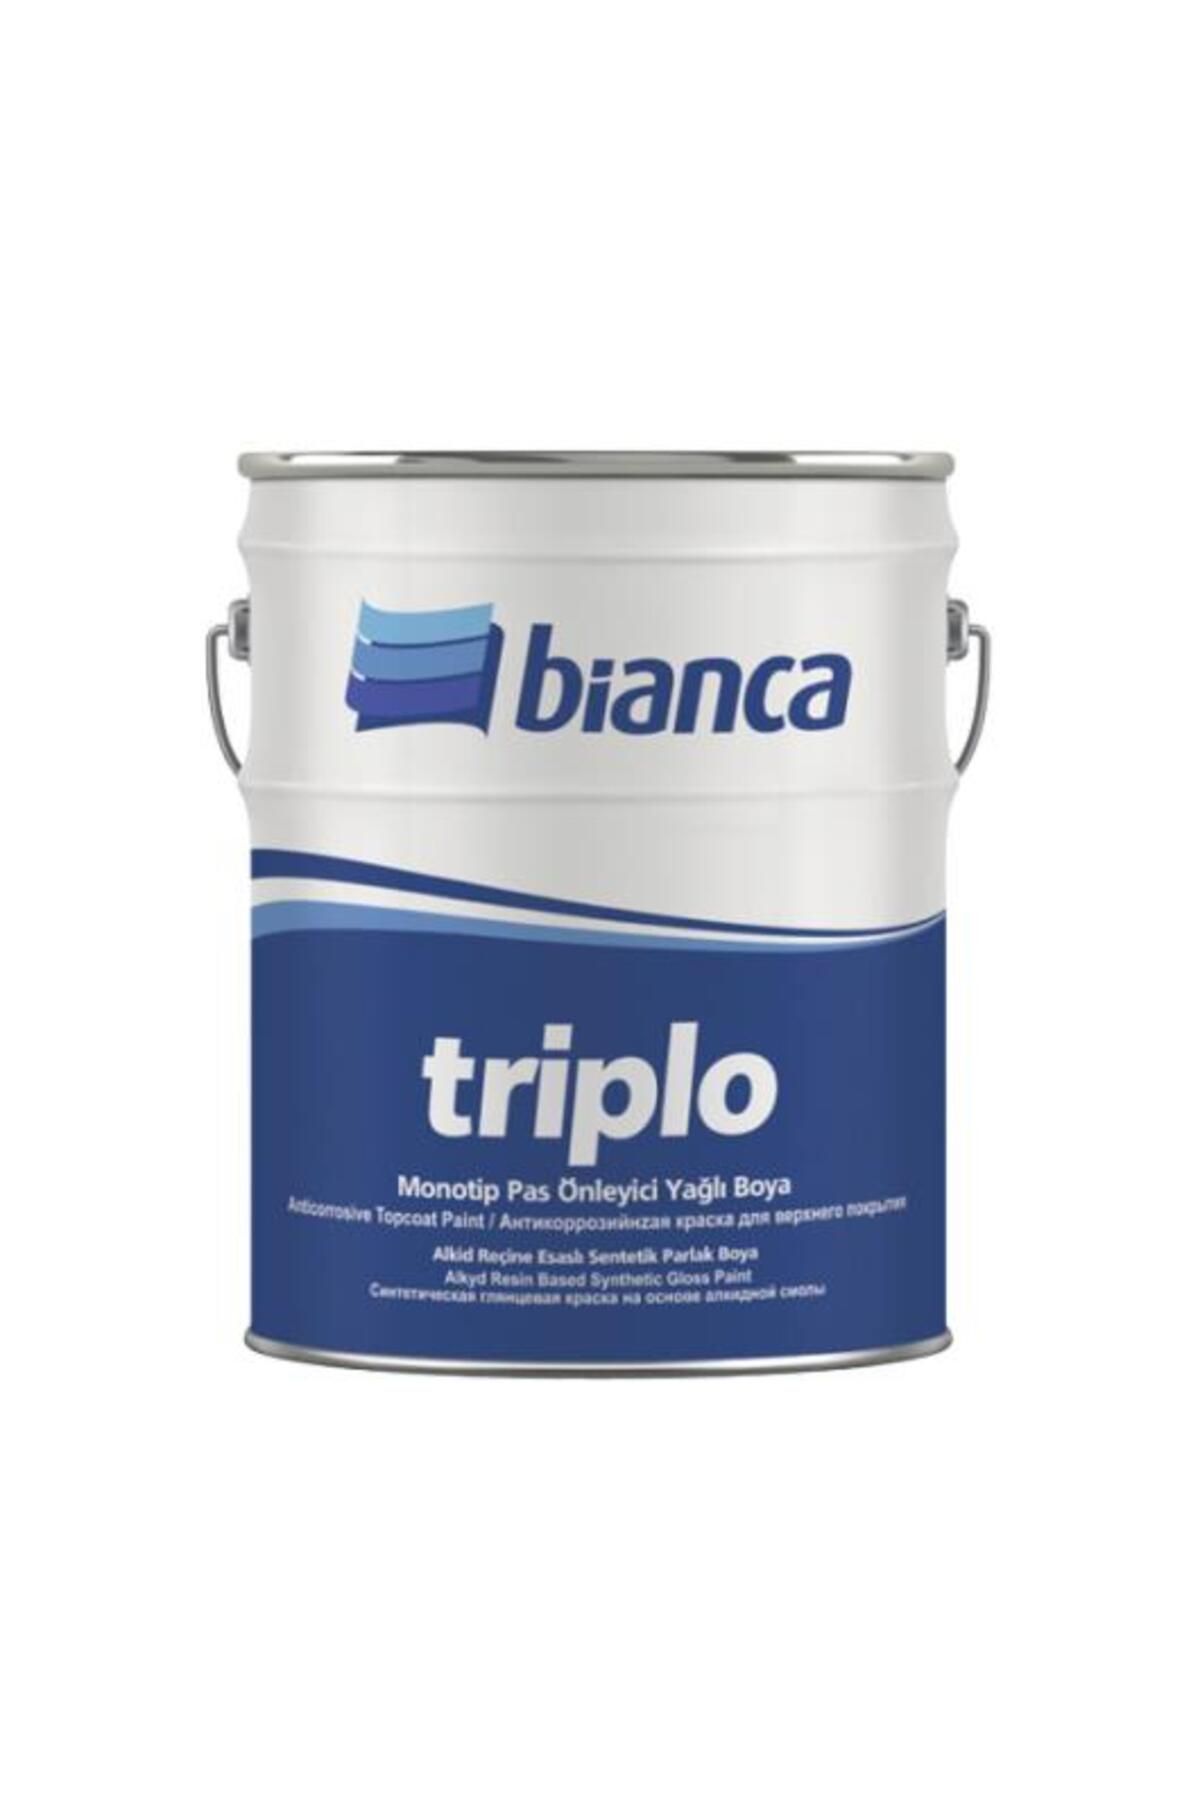 Bianca Triplo Pas Önleyici Boya 2,5lt 9005 Siyah